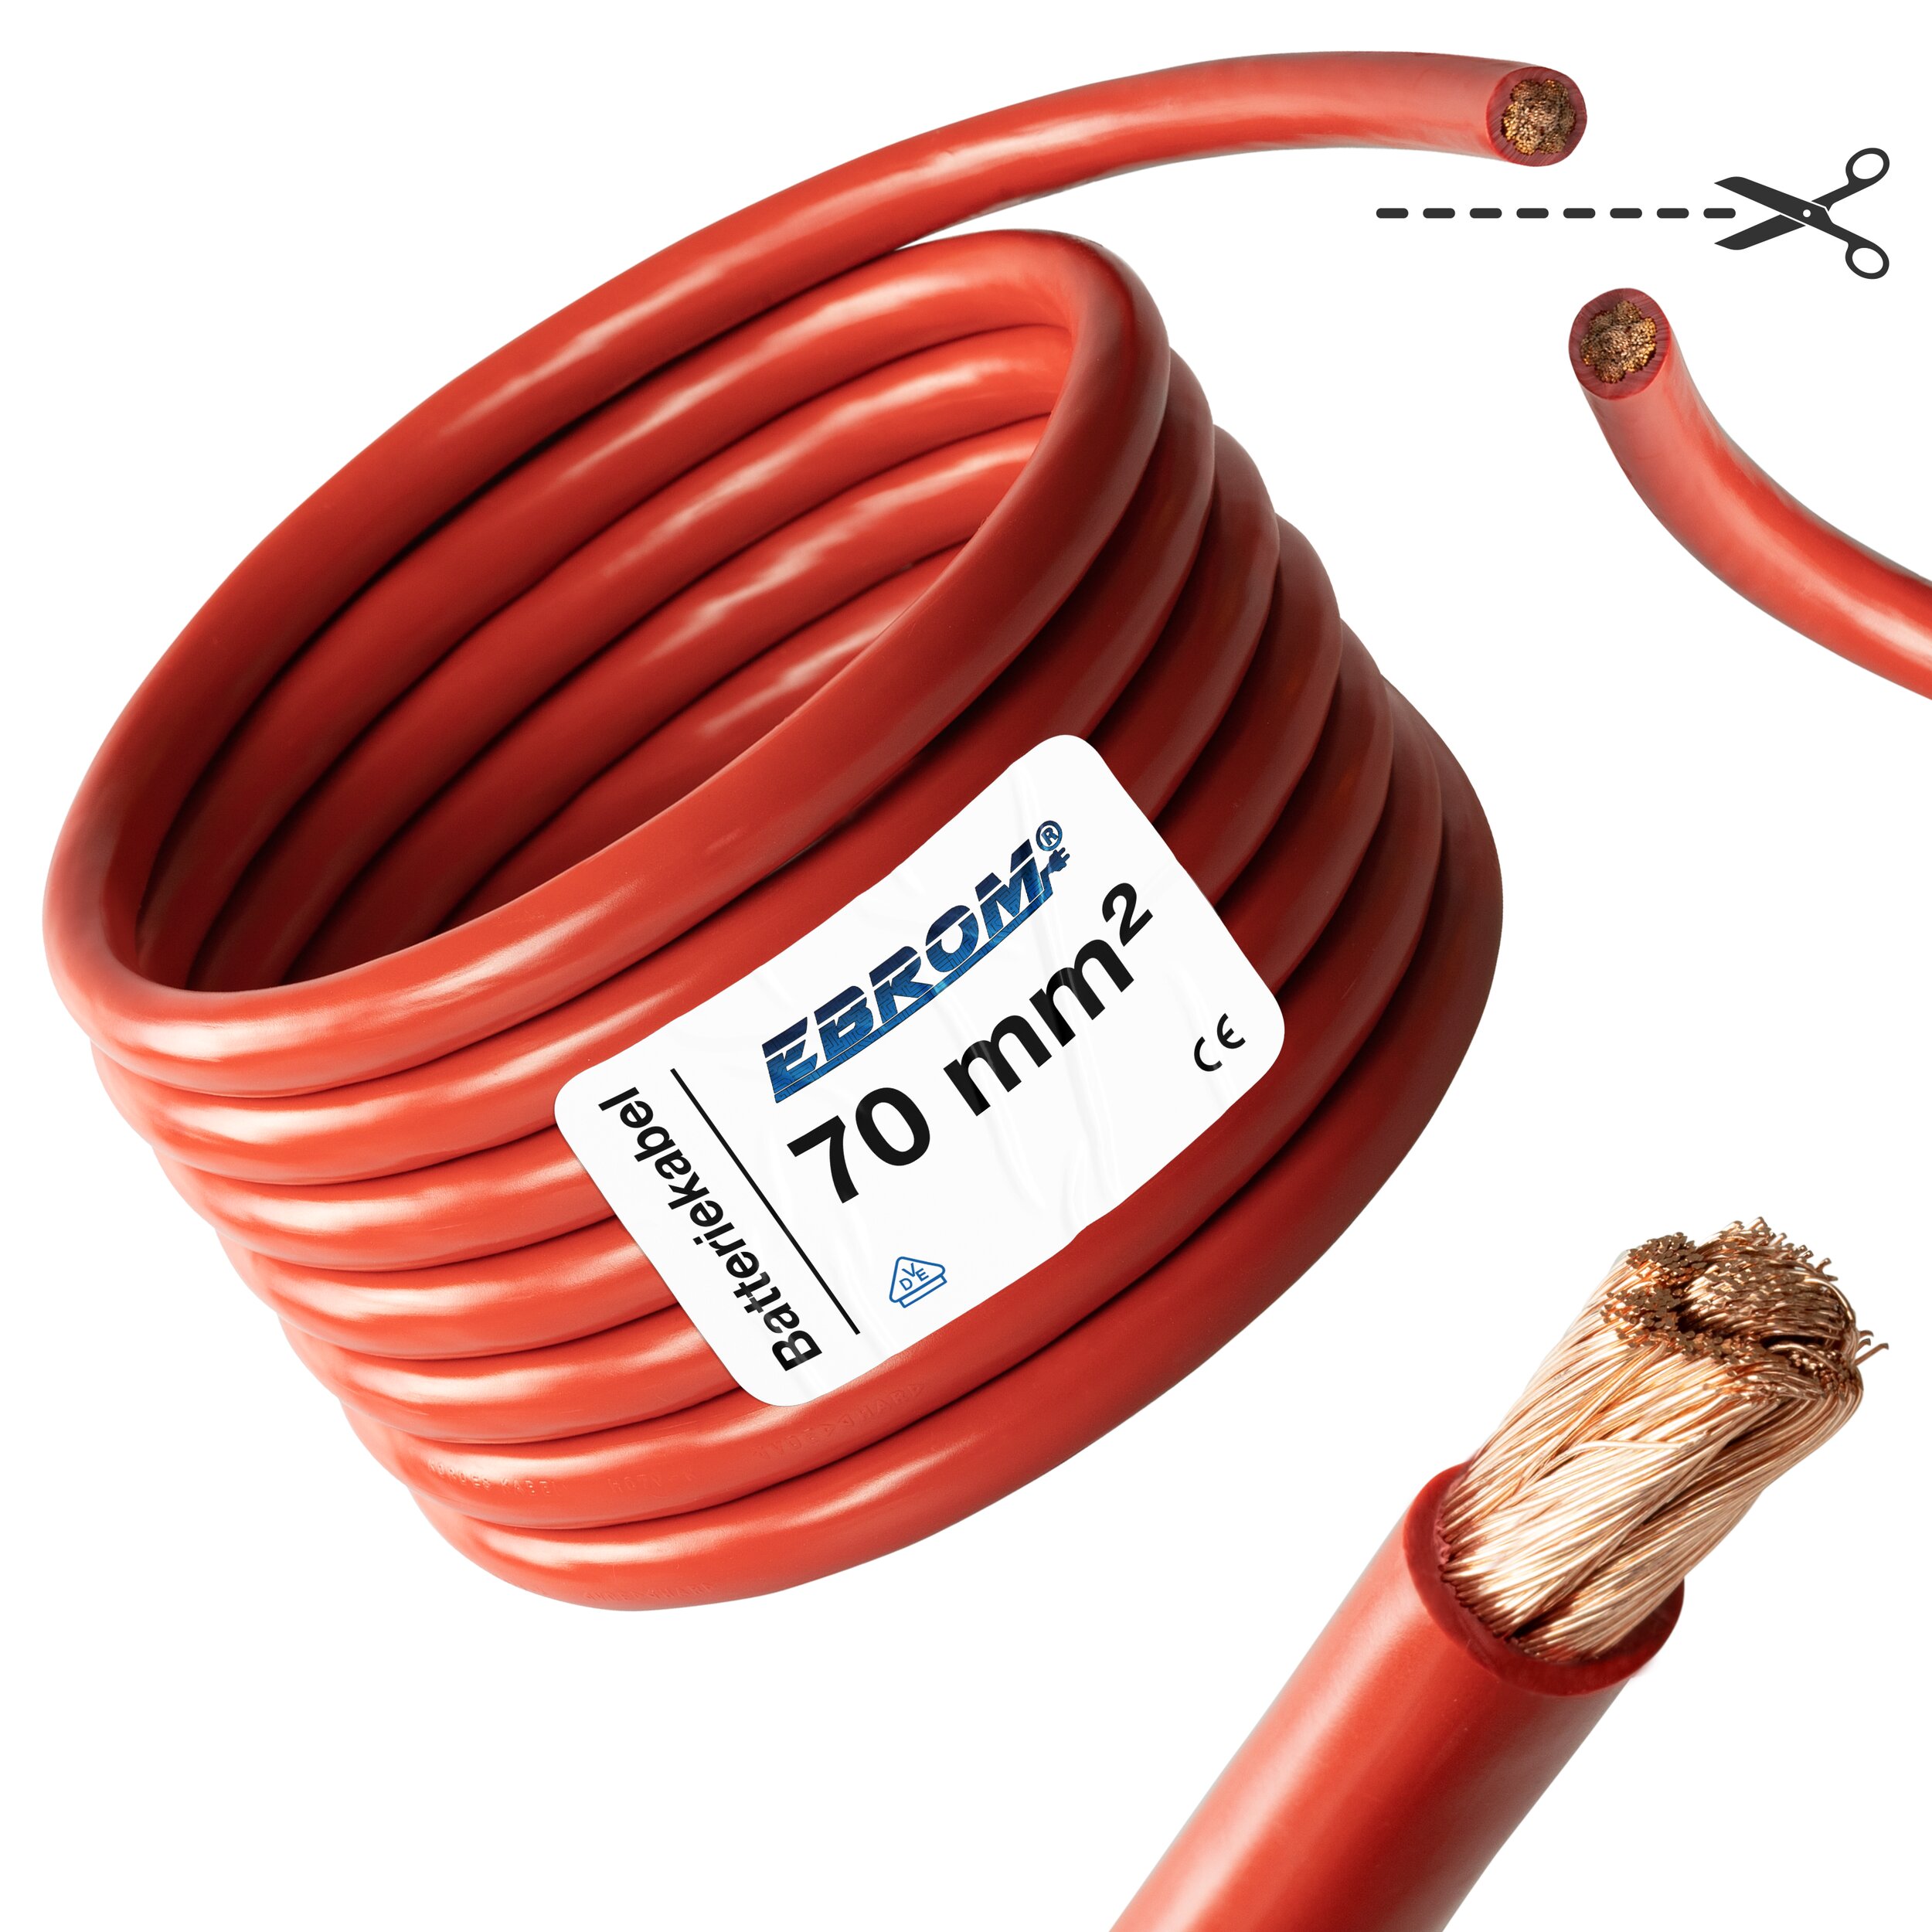 Kabel/Leitung 2-adrig 1,5 mm² verzinnte Litzenleitung rot/schwarz